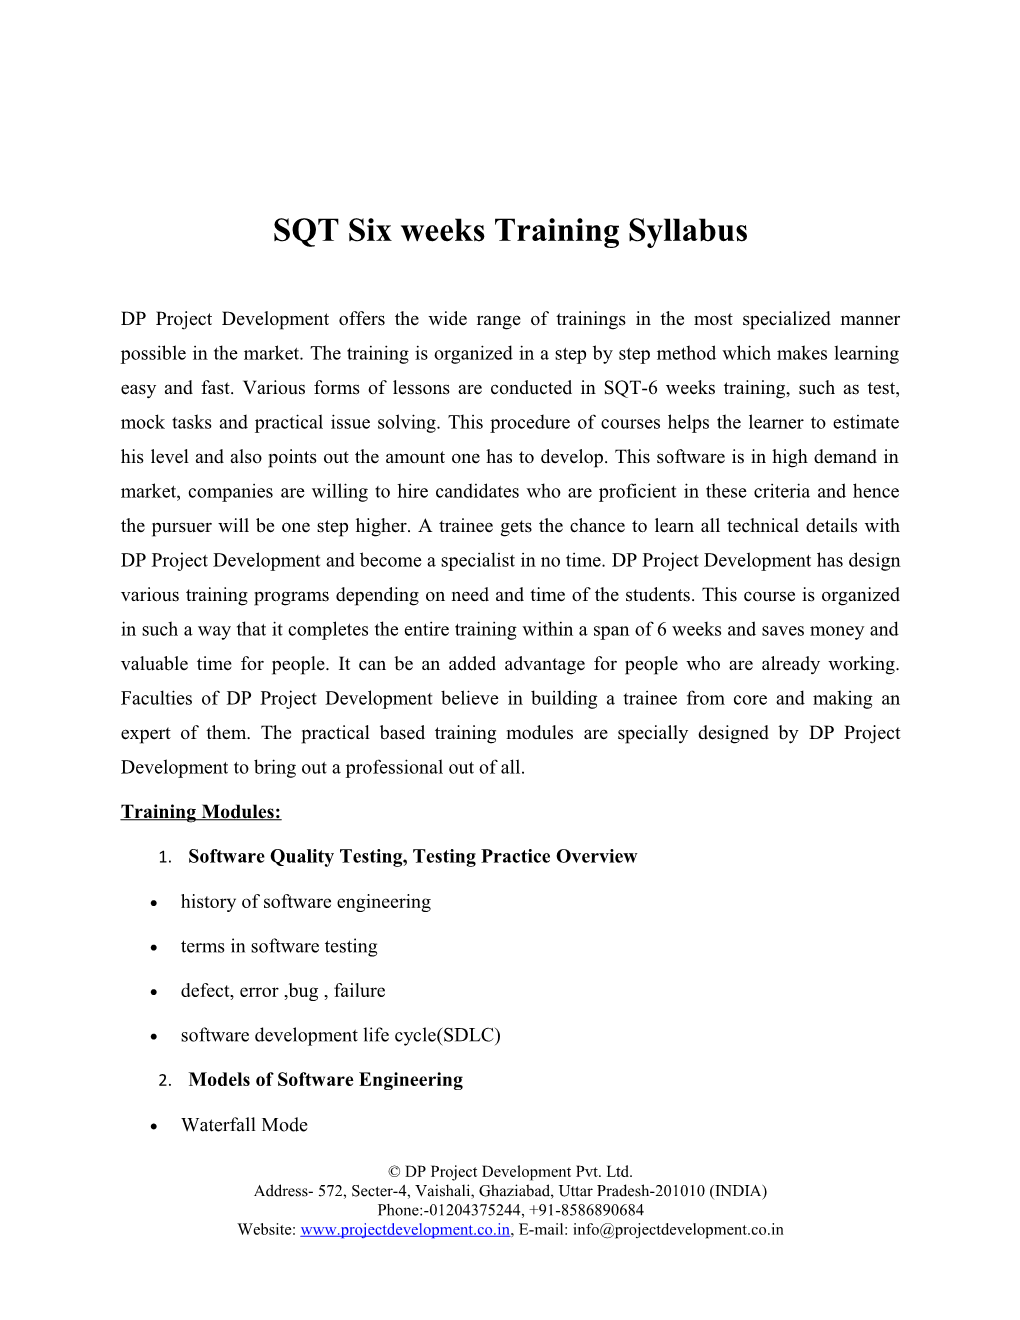 SQT Six Weeks Training Syllabus